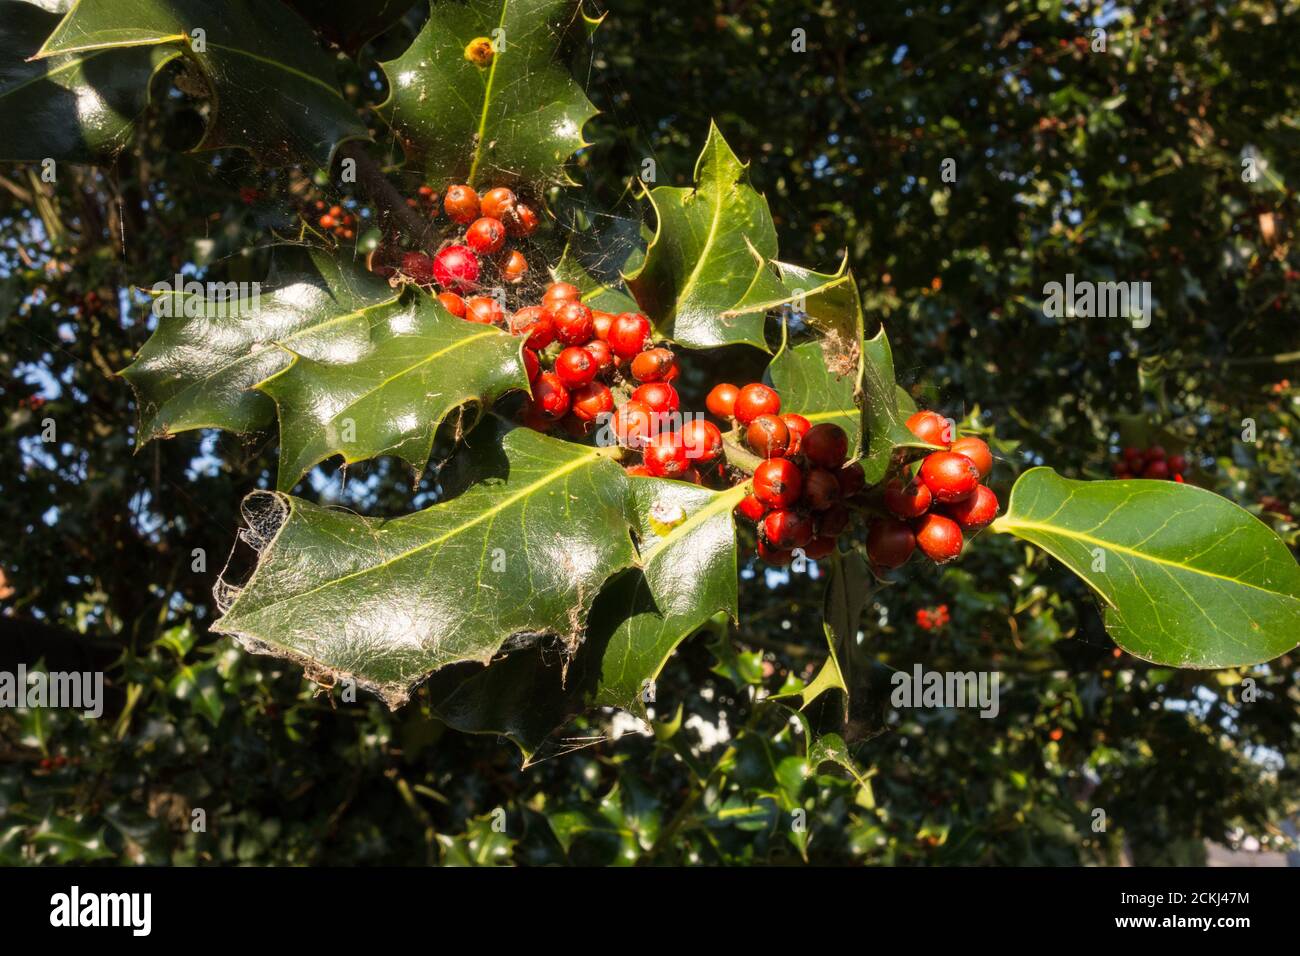 Festliche, aber giftige leuchtend rote Holly-Beeren (Ilex aquifolium) Stockfoto